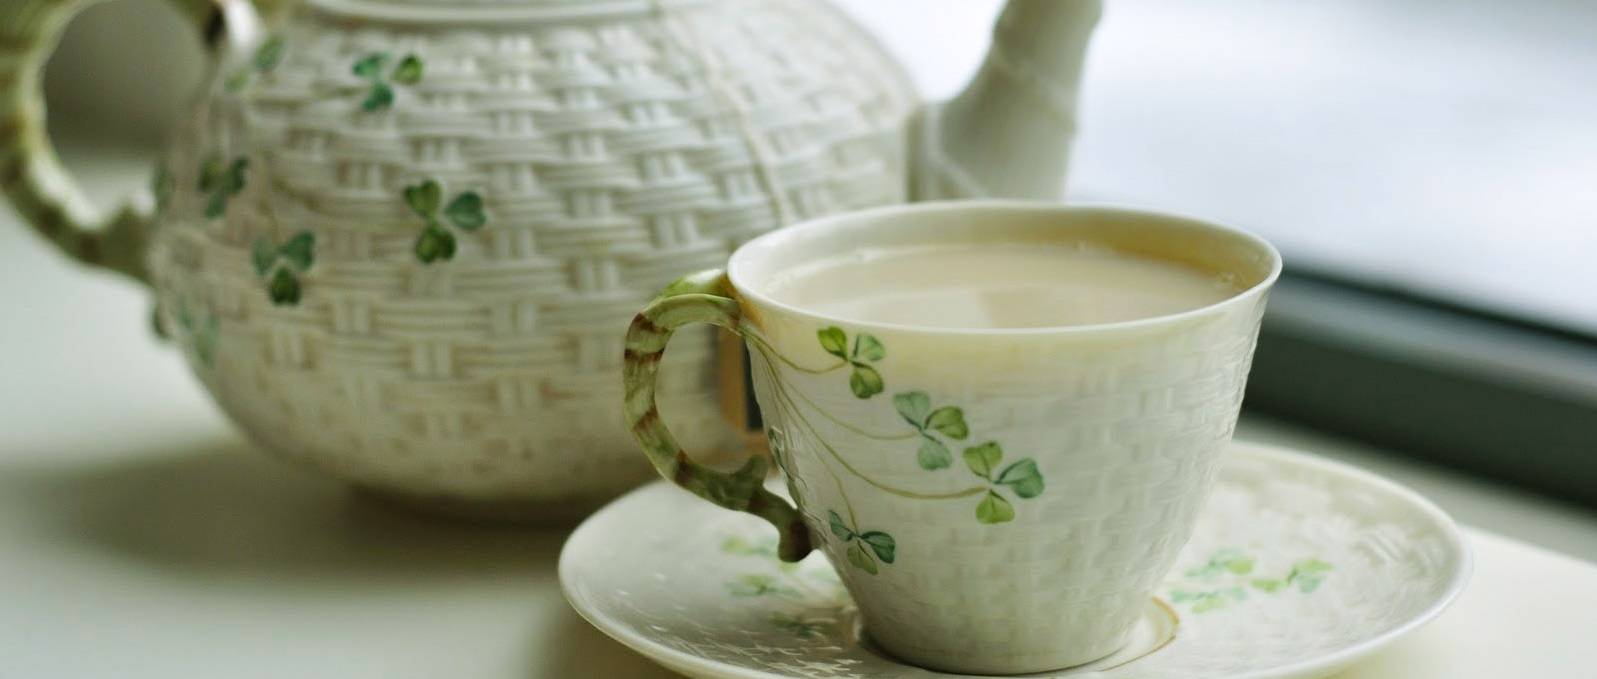 Стоит ли пить зеленый чай с молоком: польза или вред?